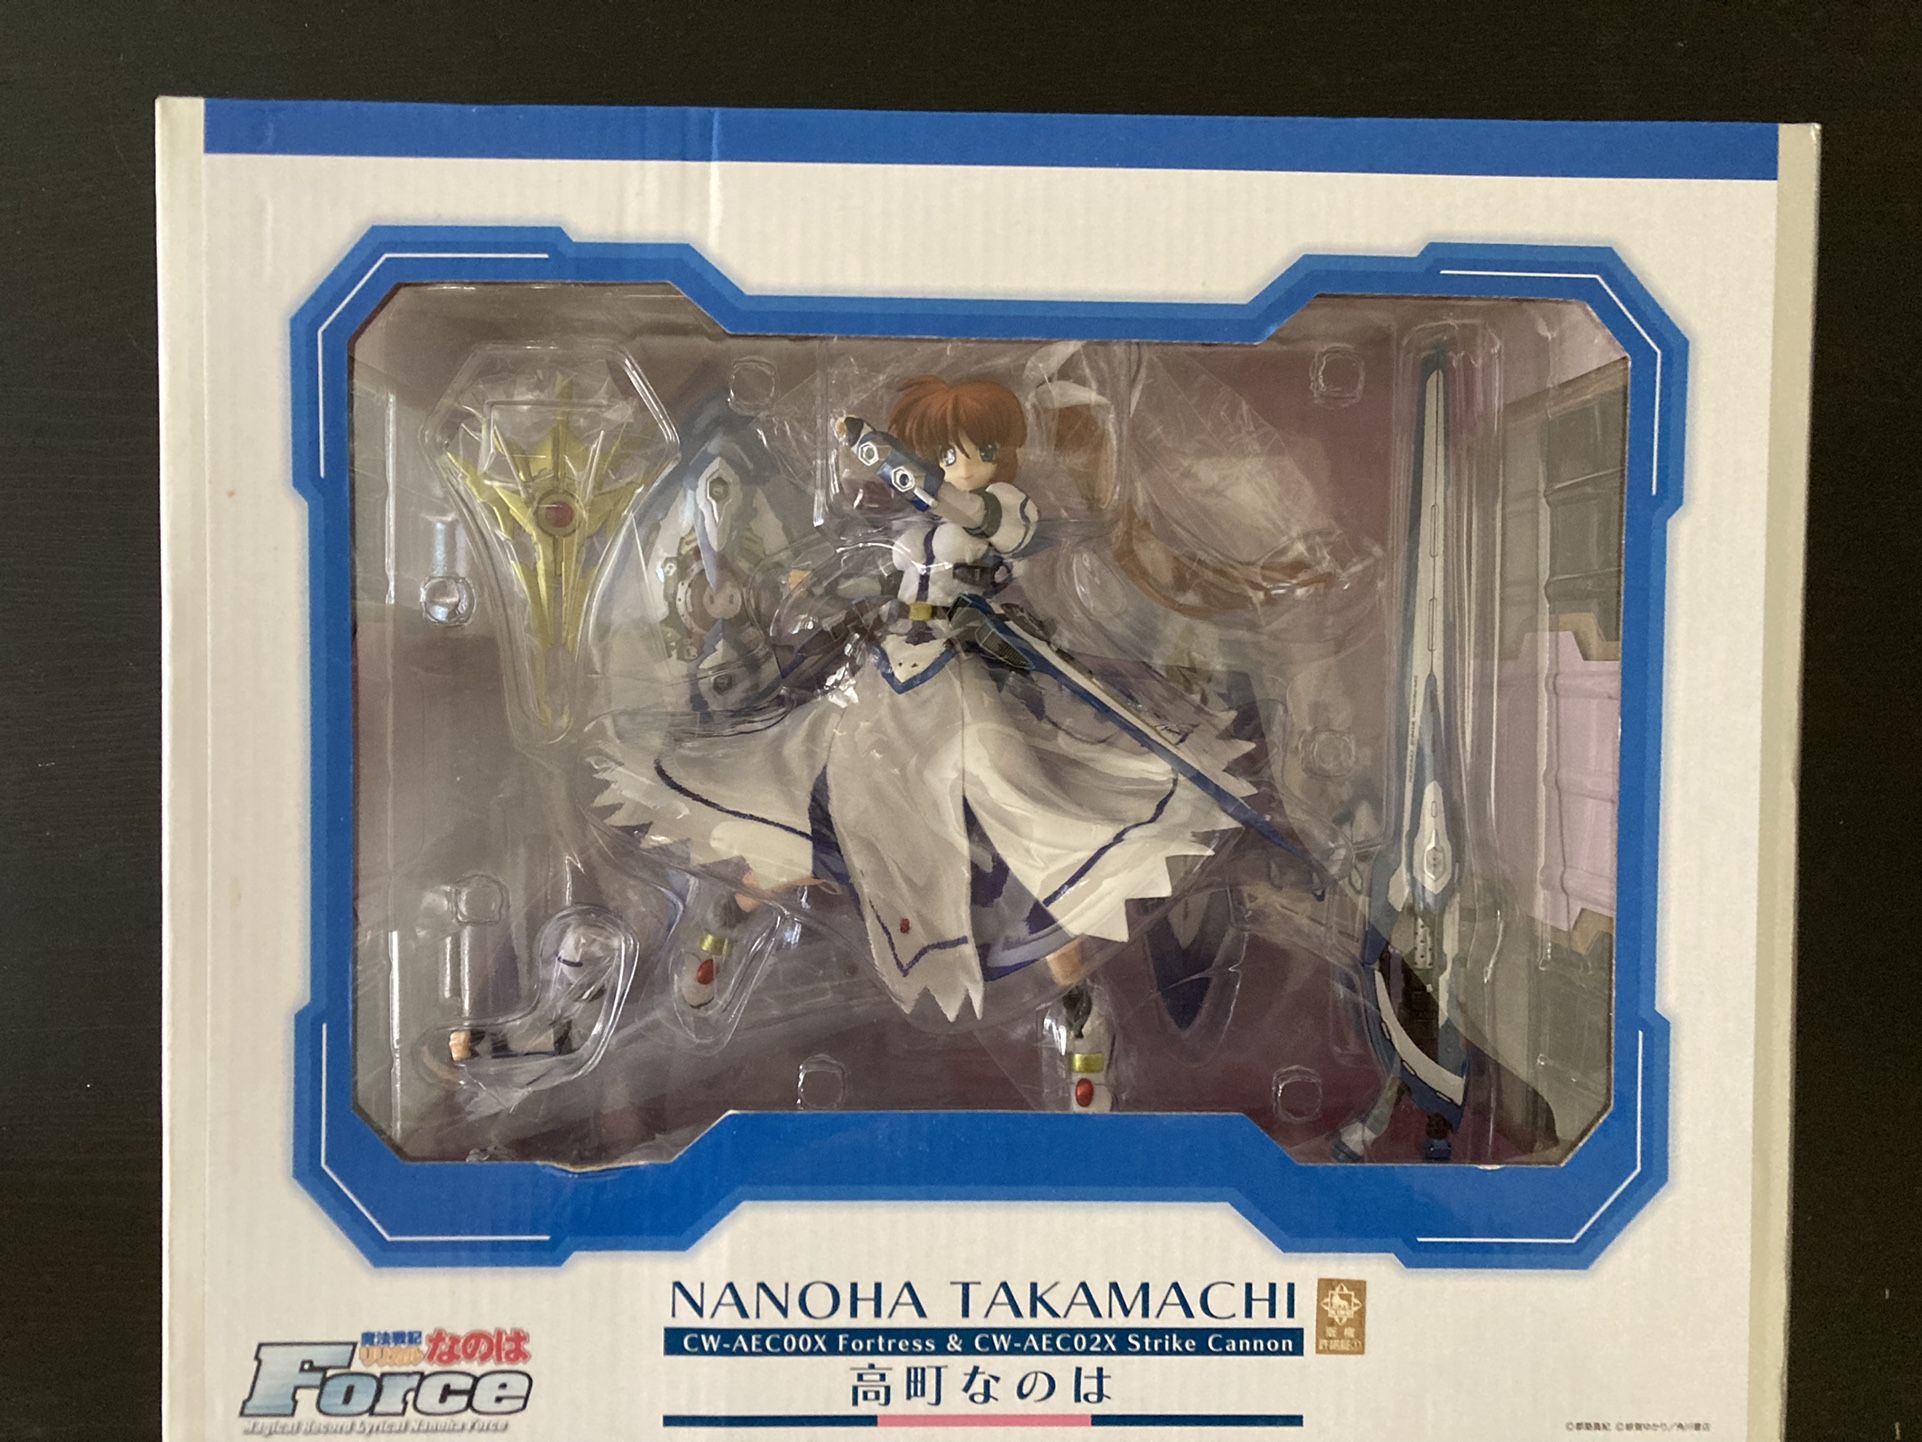 Nanoha Takamachi Collectible Figurine